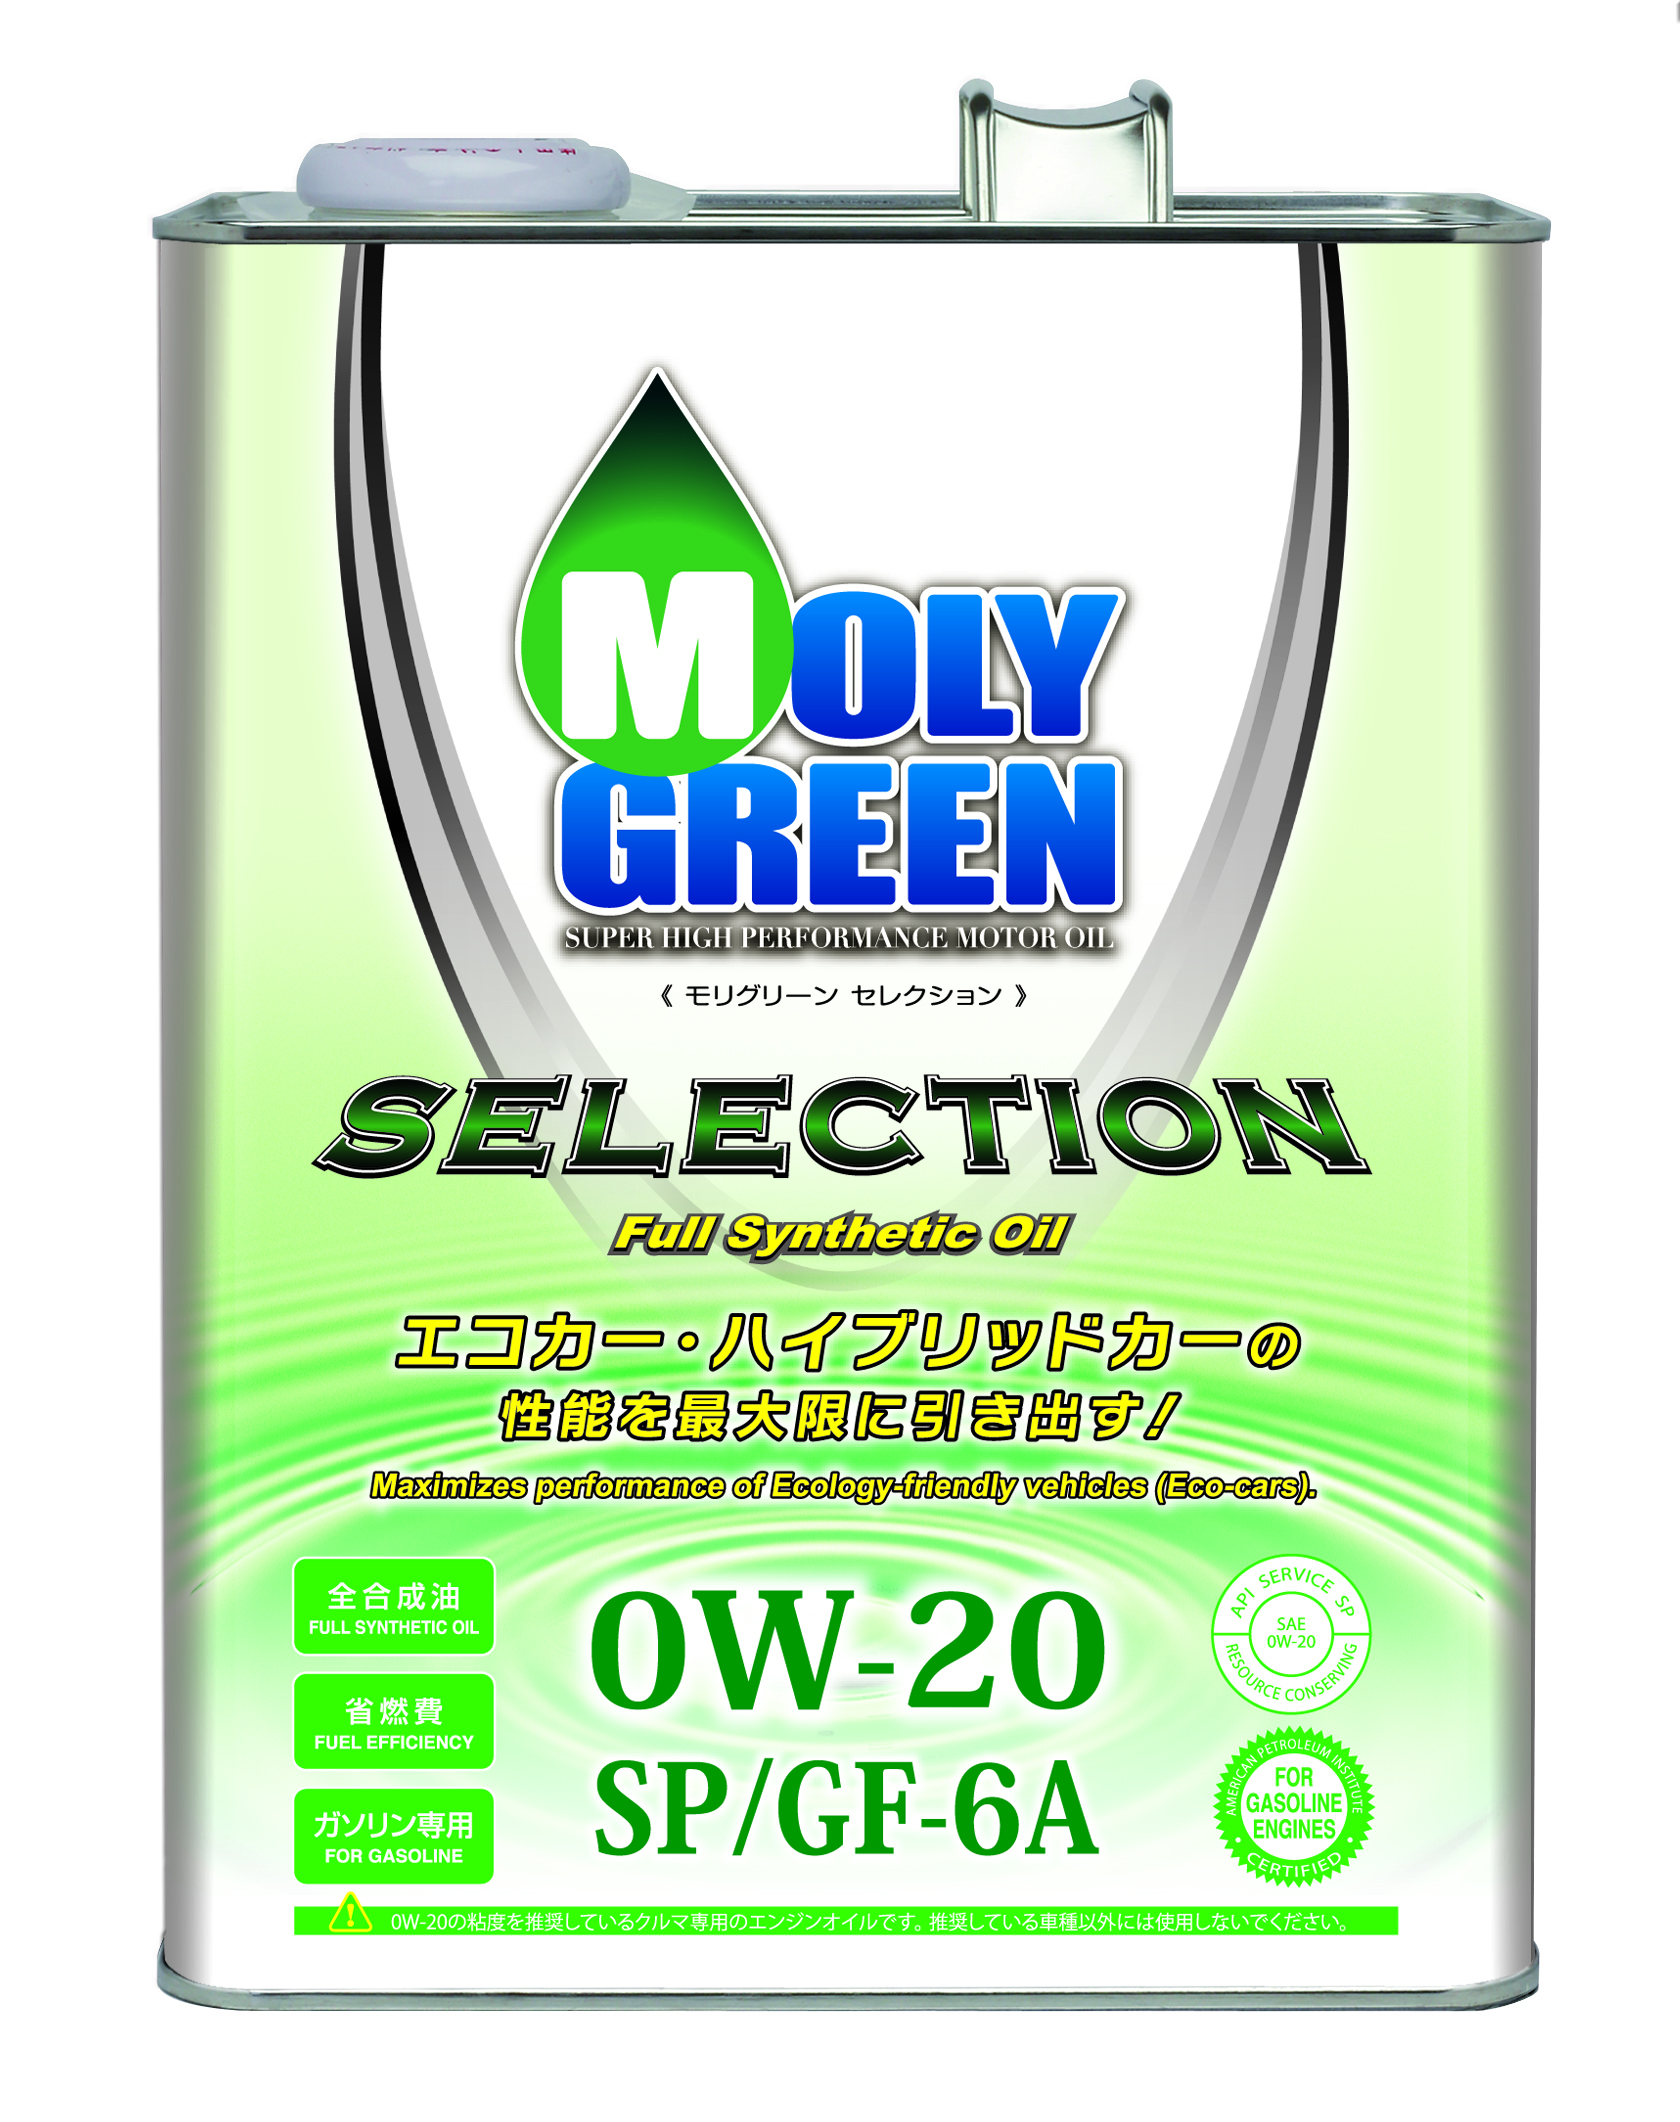 モリグリーン 0W-20 セレクションSP